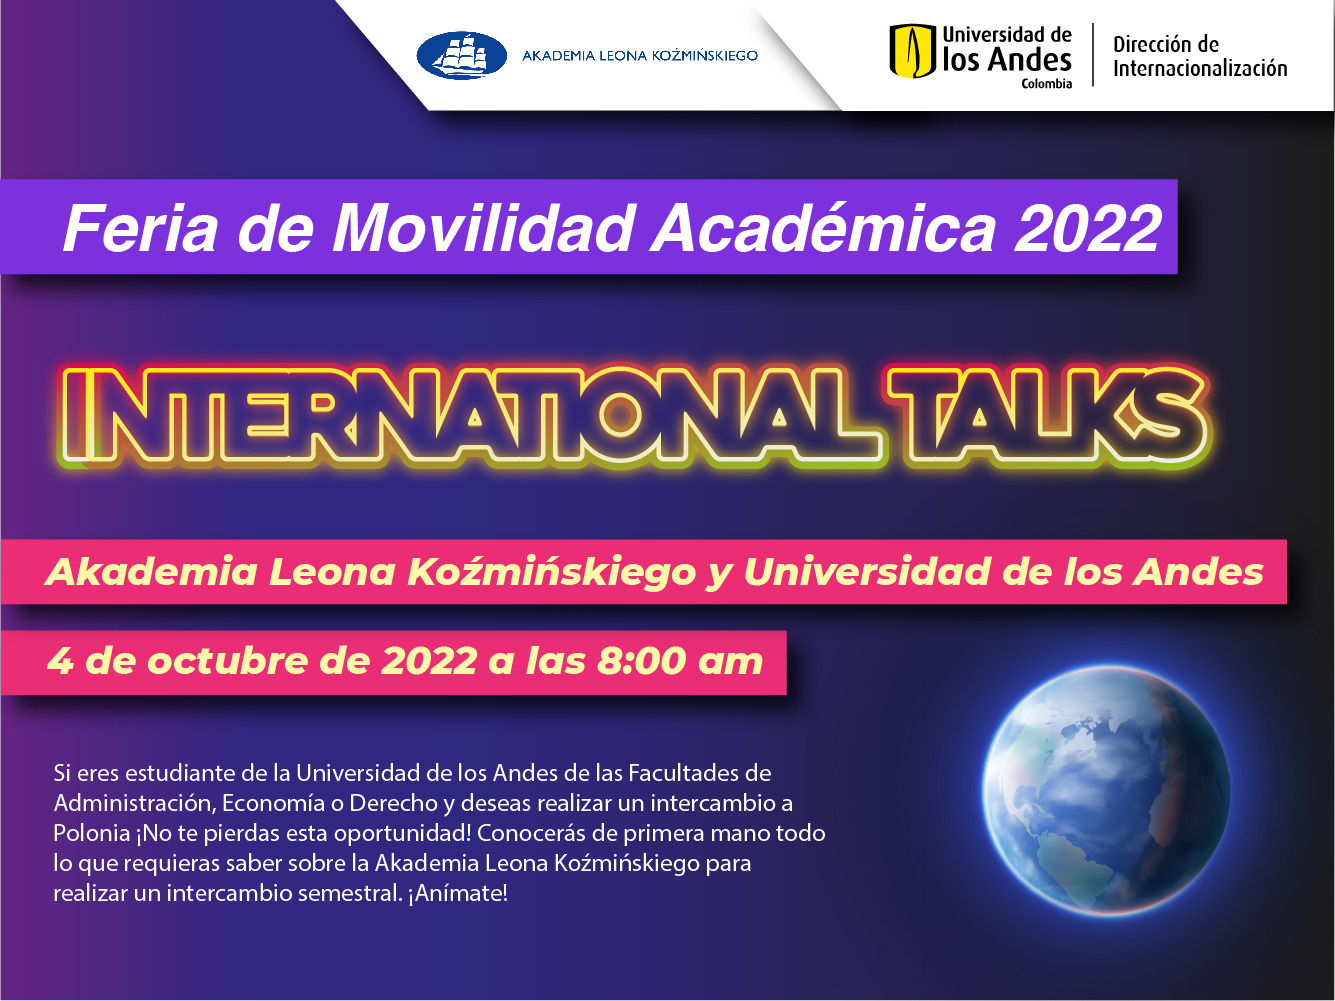 Akademia Leona Koźmińskiego y Universidad de los Andes 